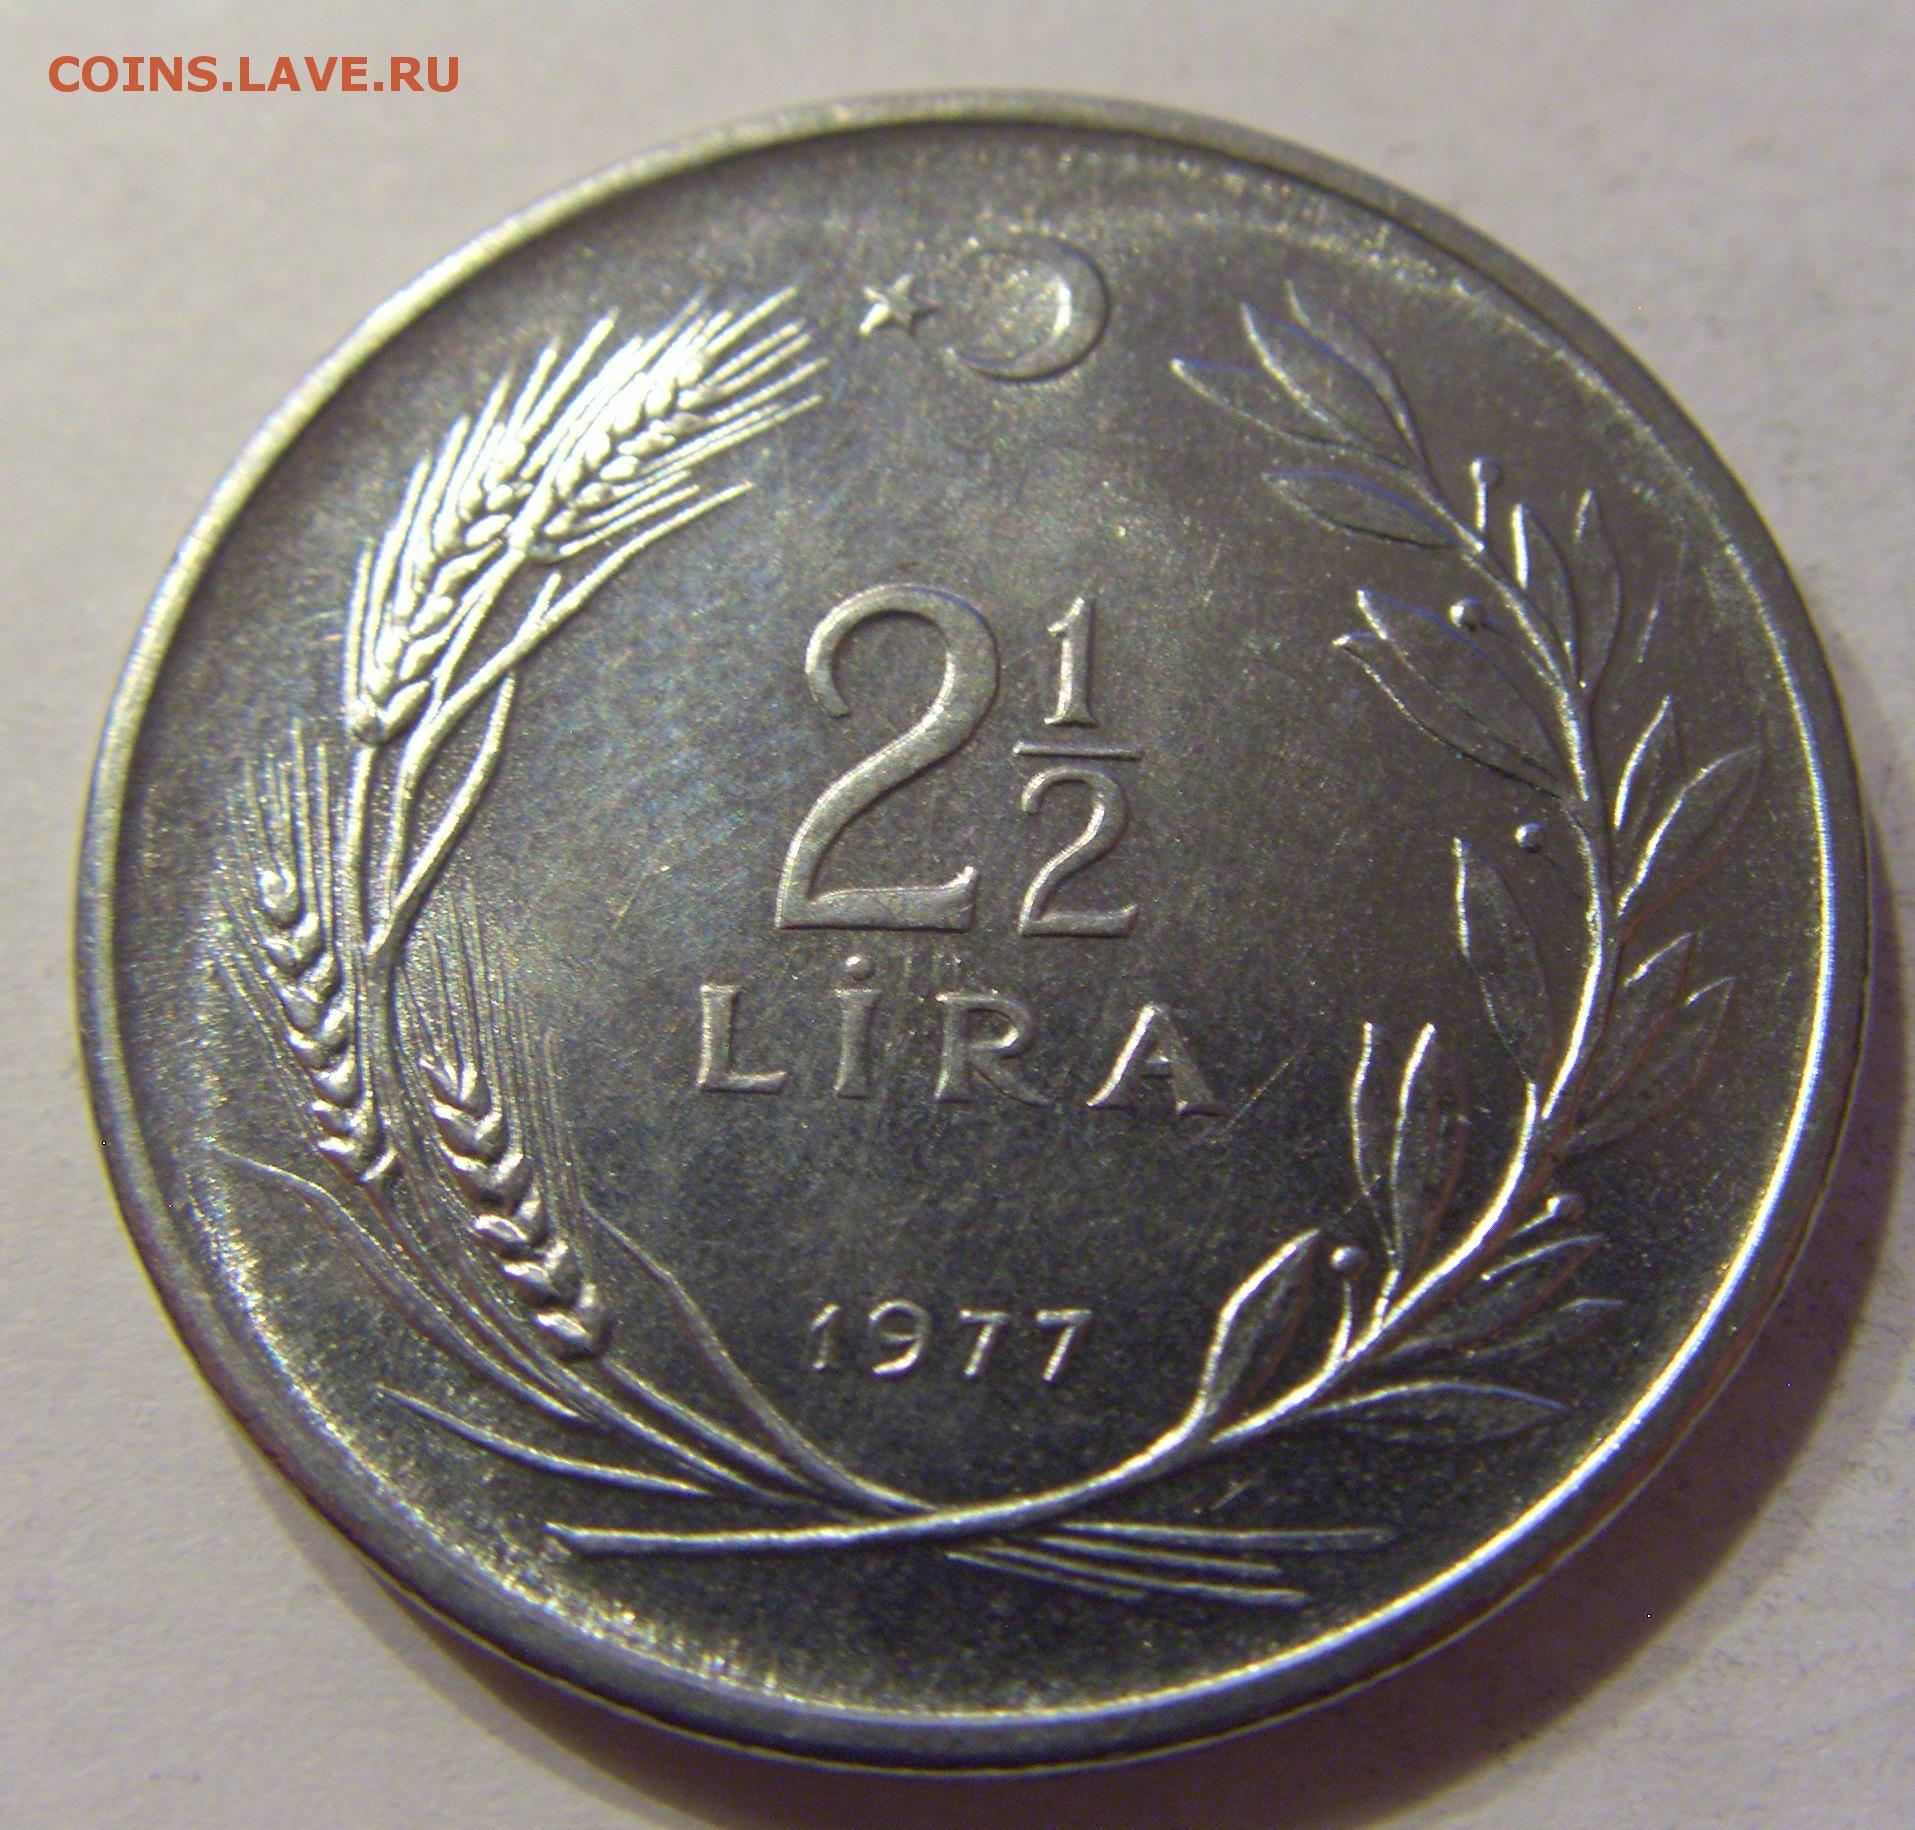 35 российских рублей. Турция 5 лир, 1977.